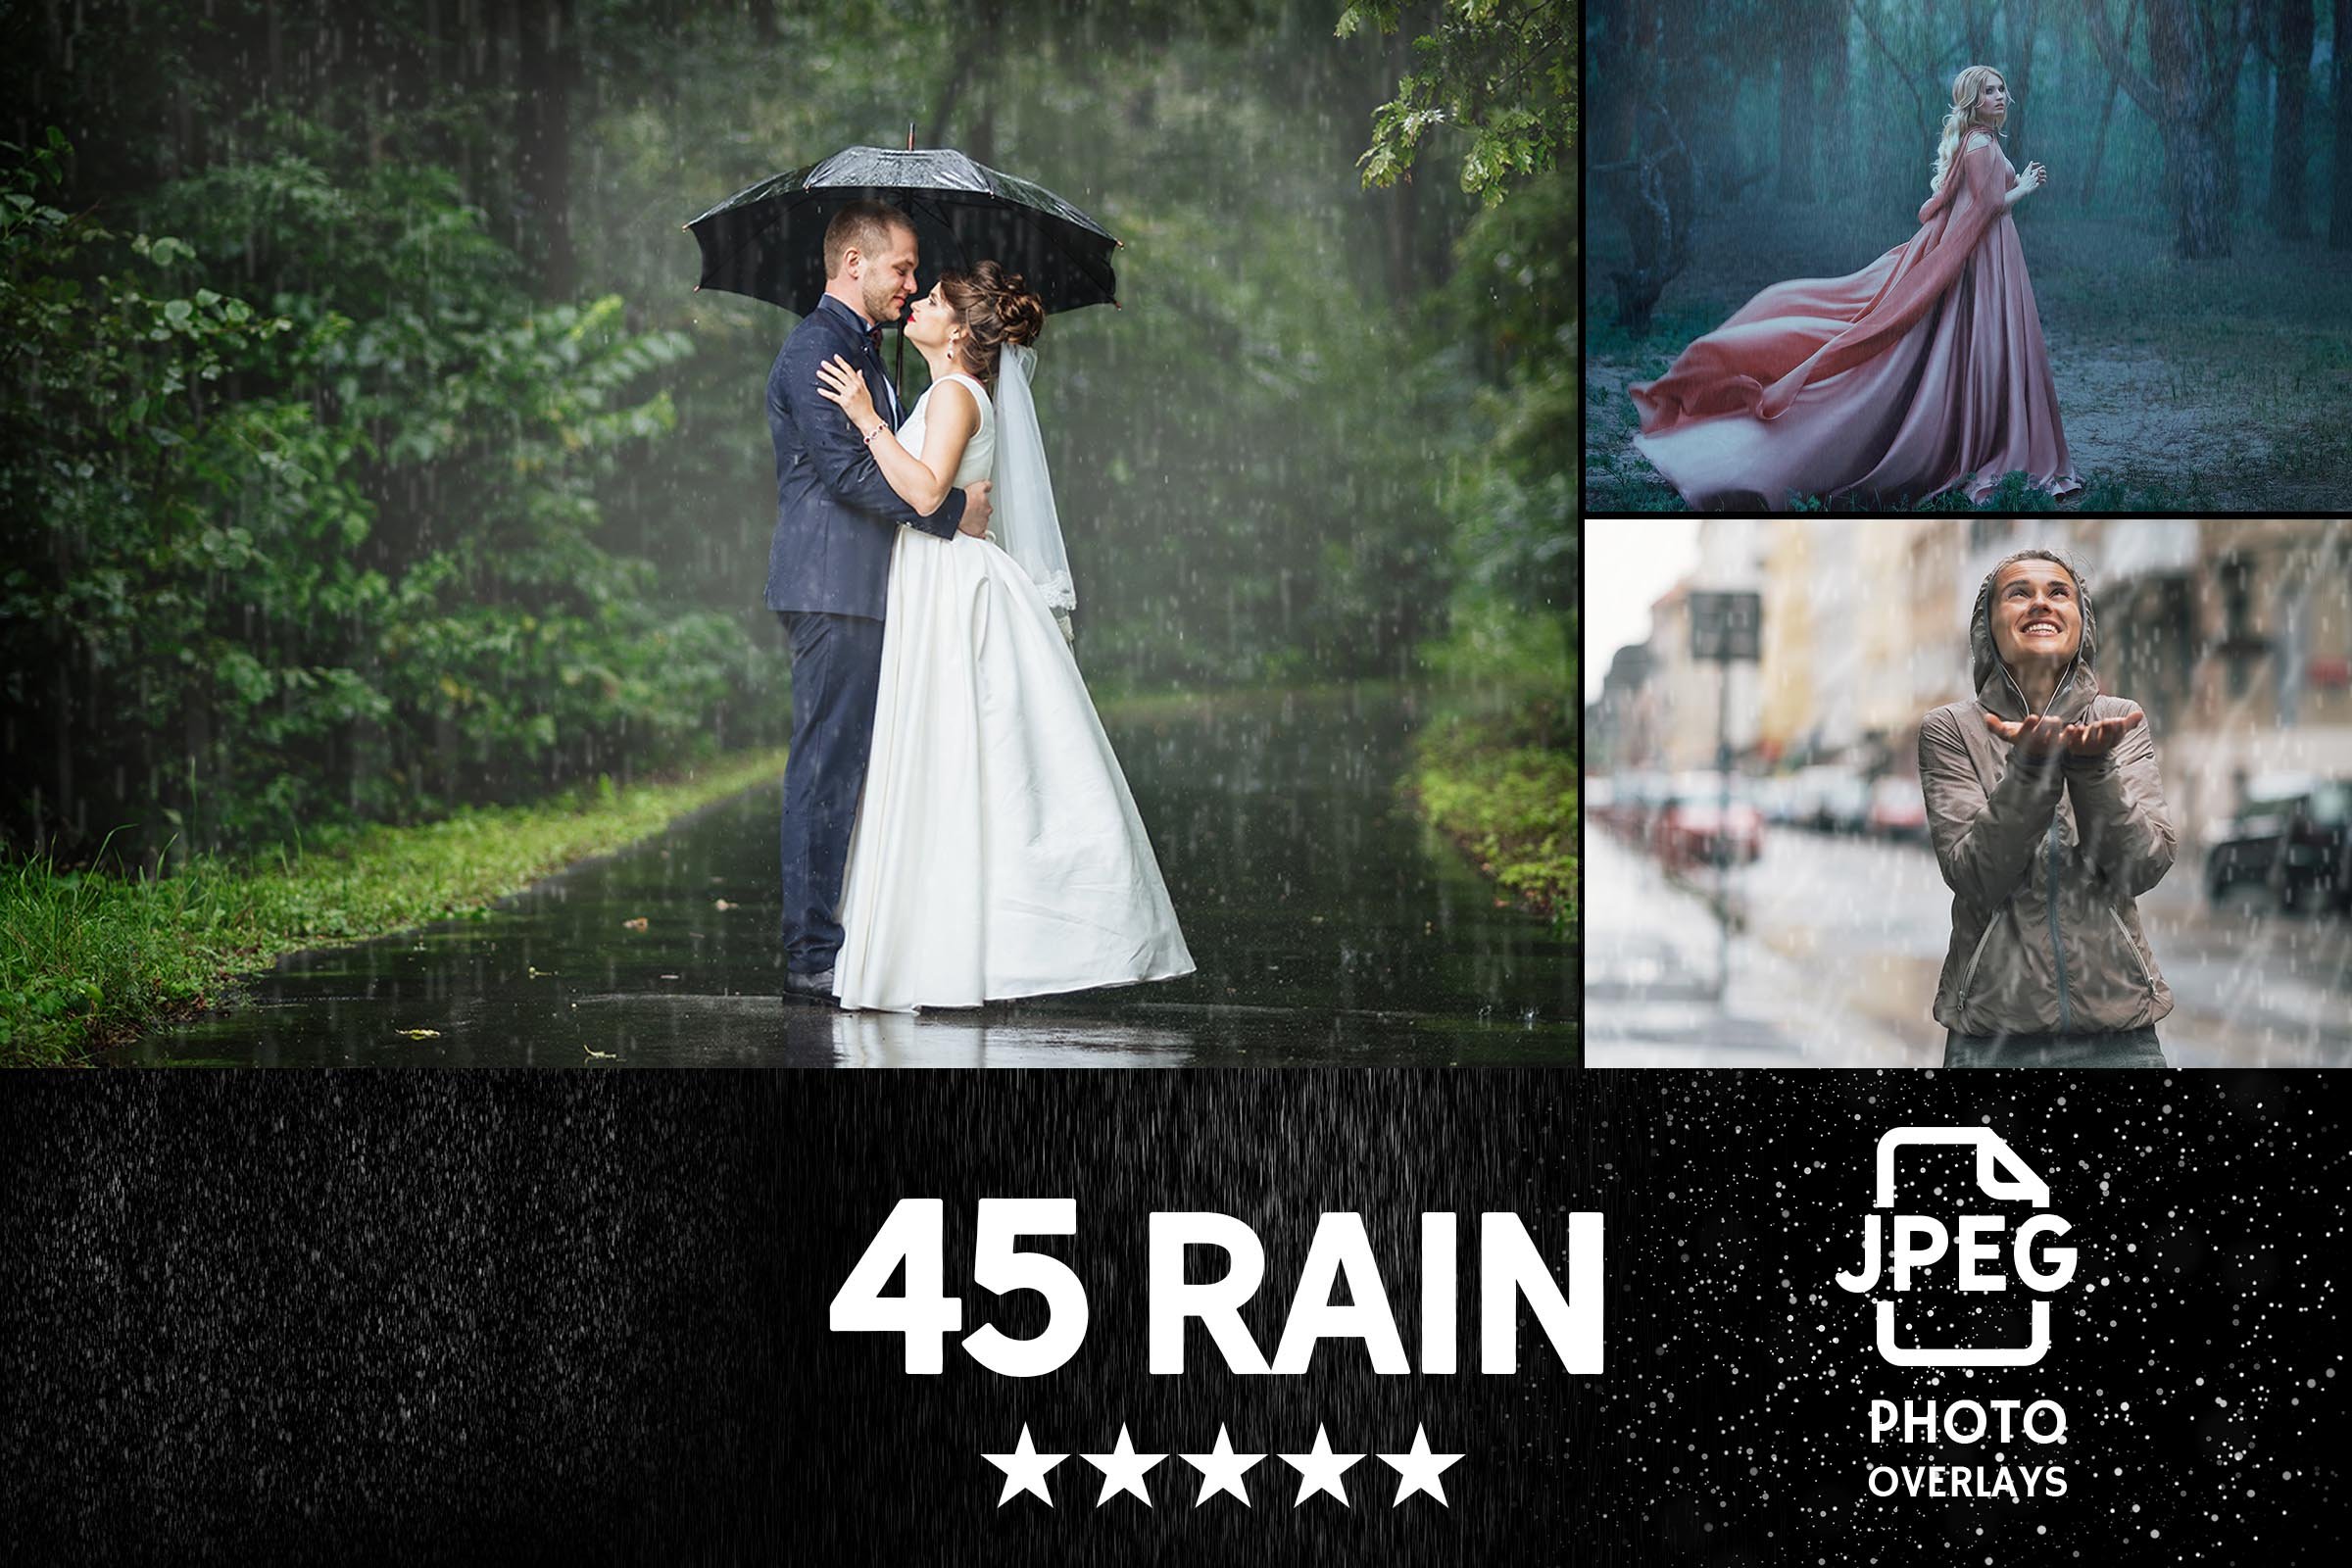 036 pro. 45 rain photo overlays 14